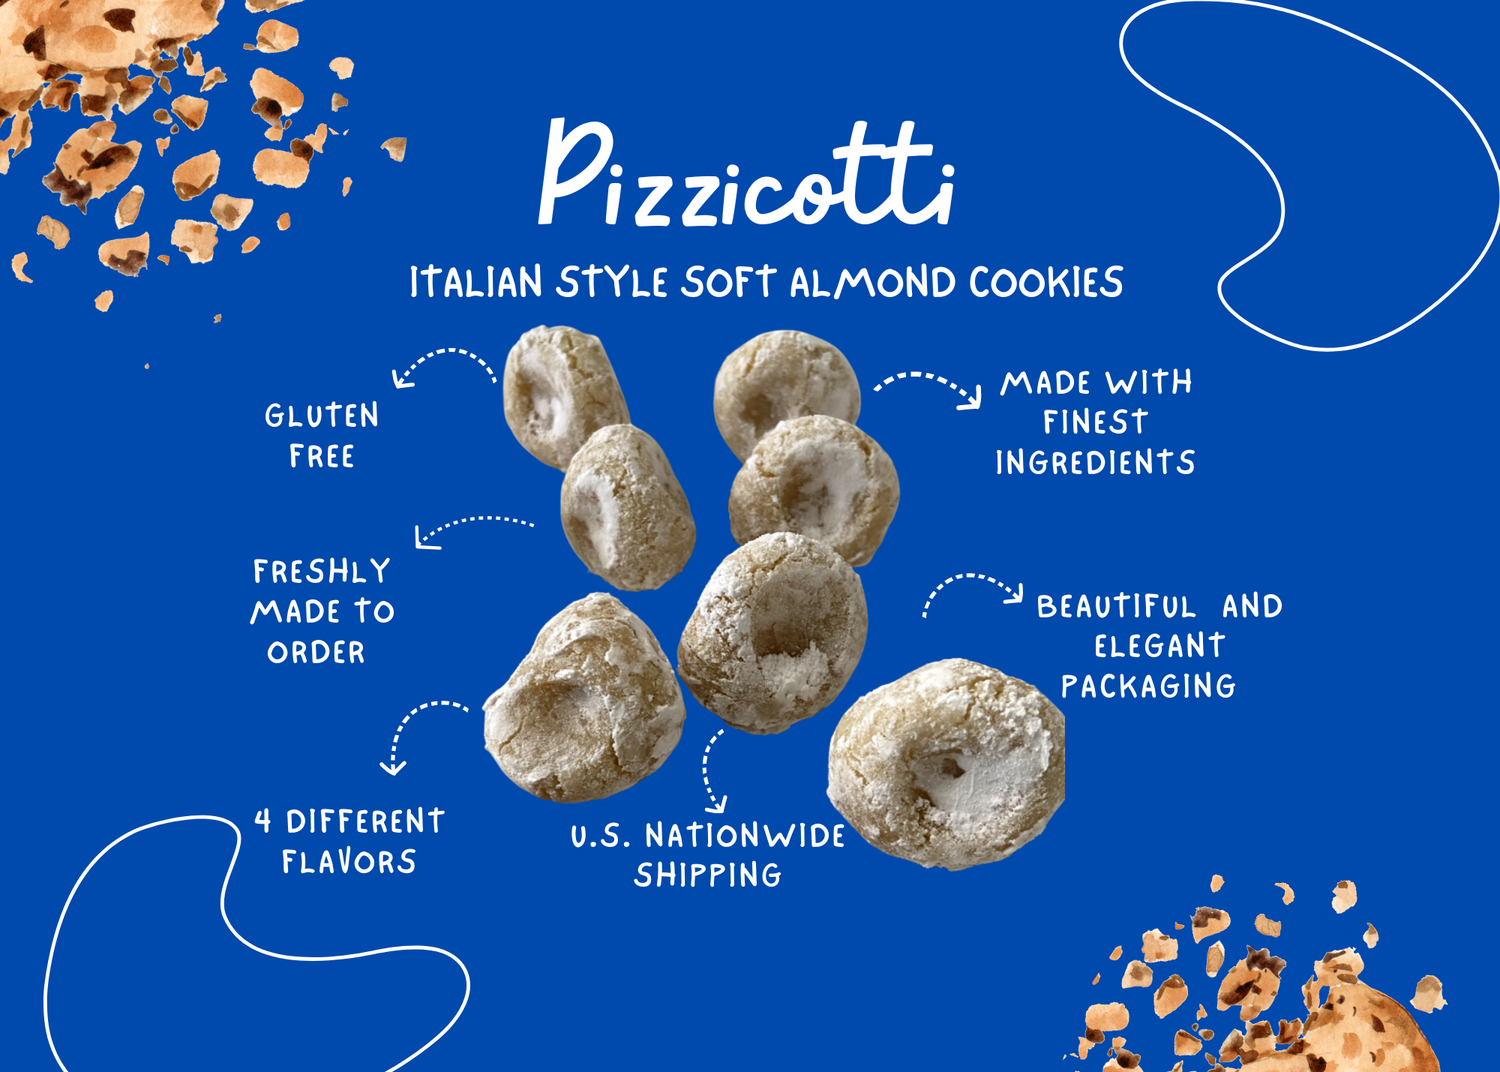 Description of what are pizzicotti